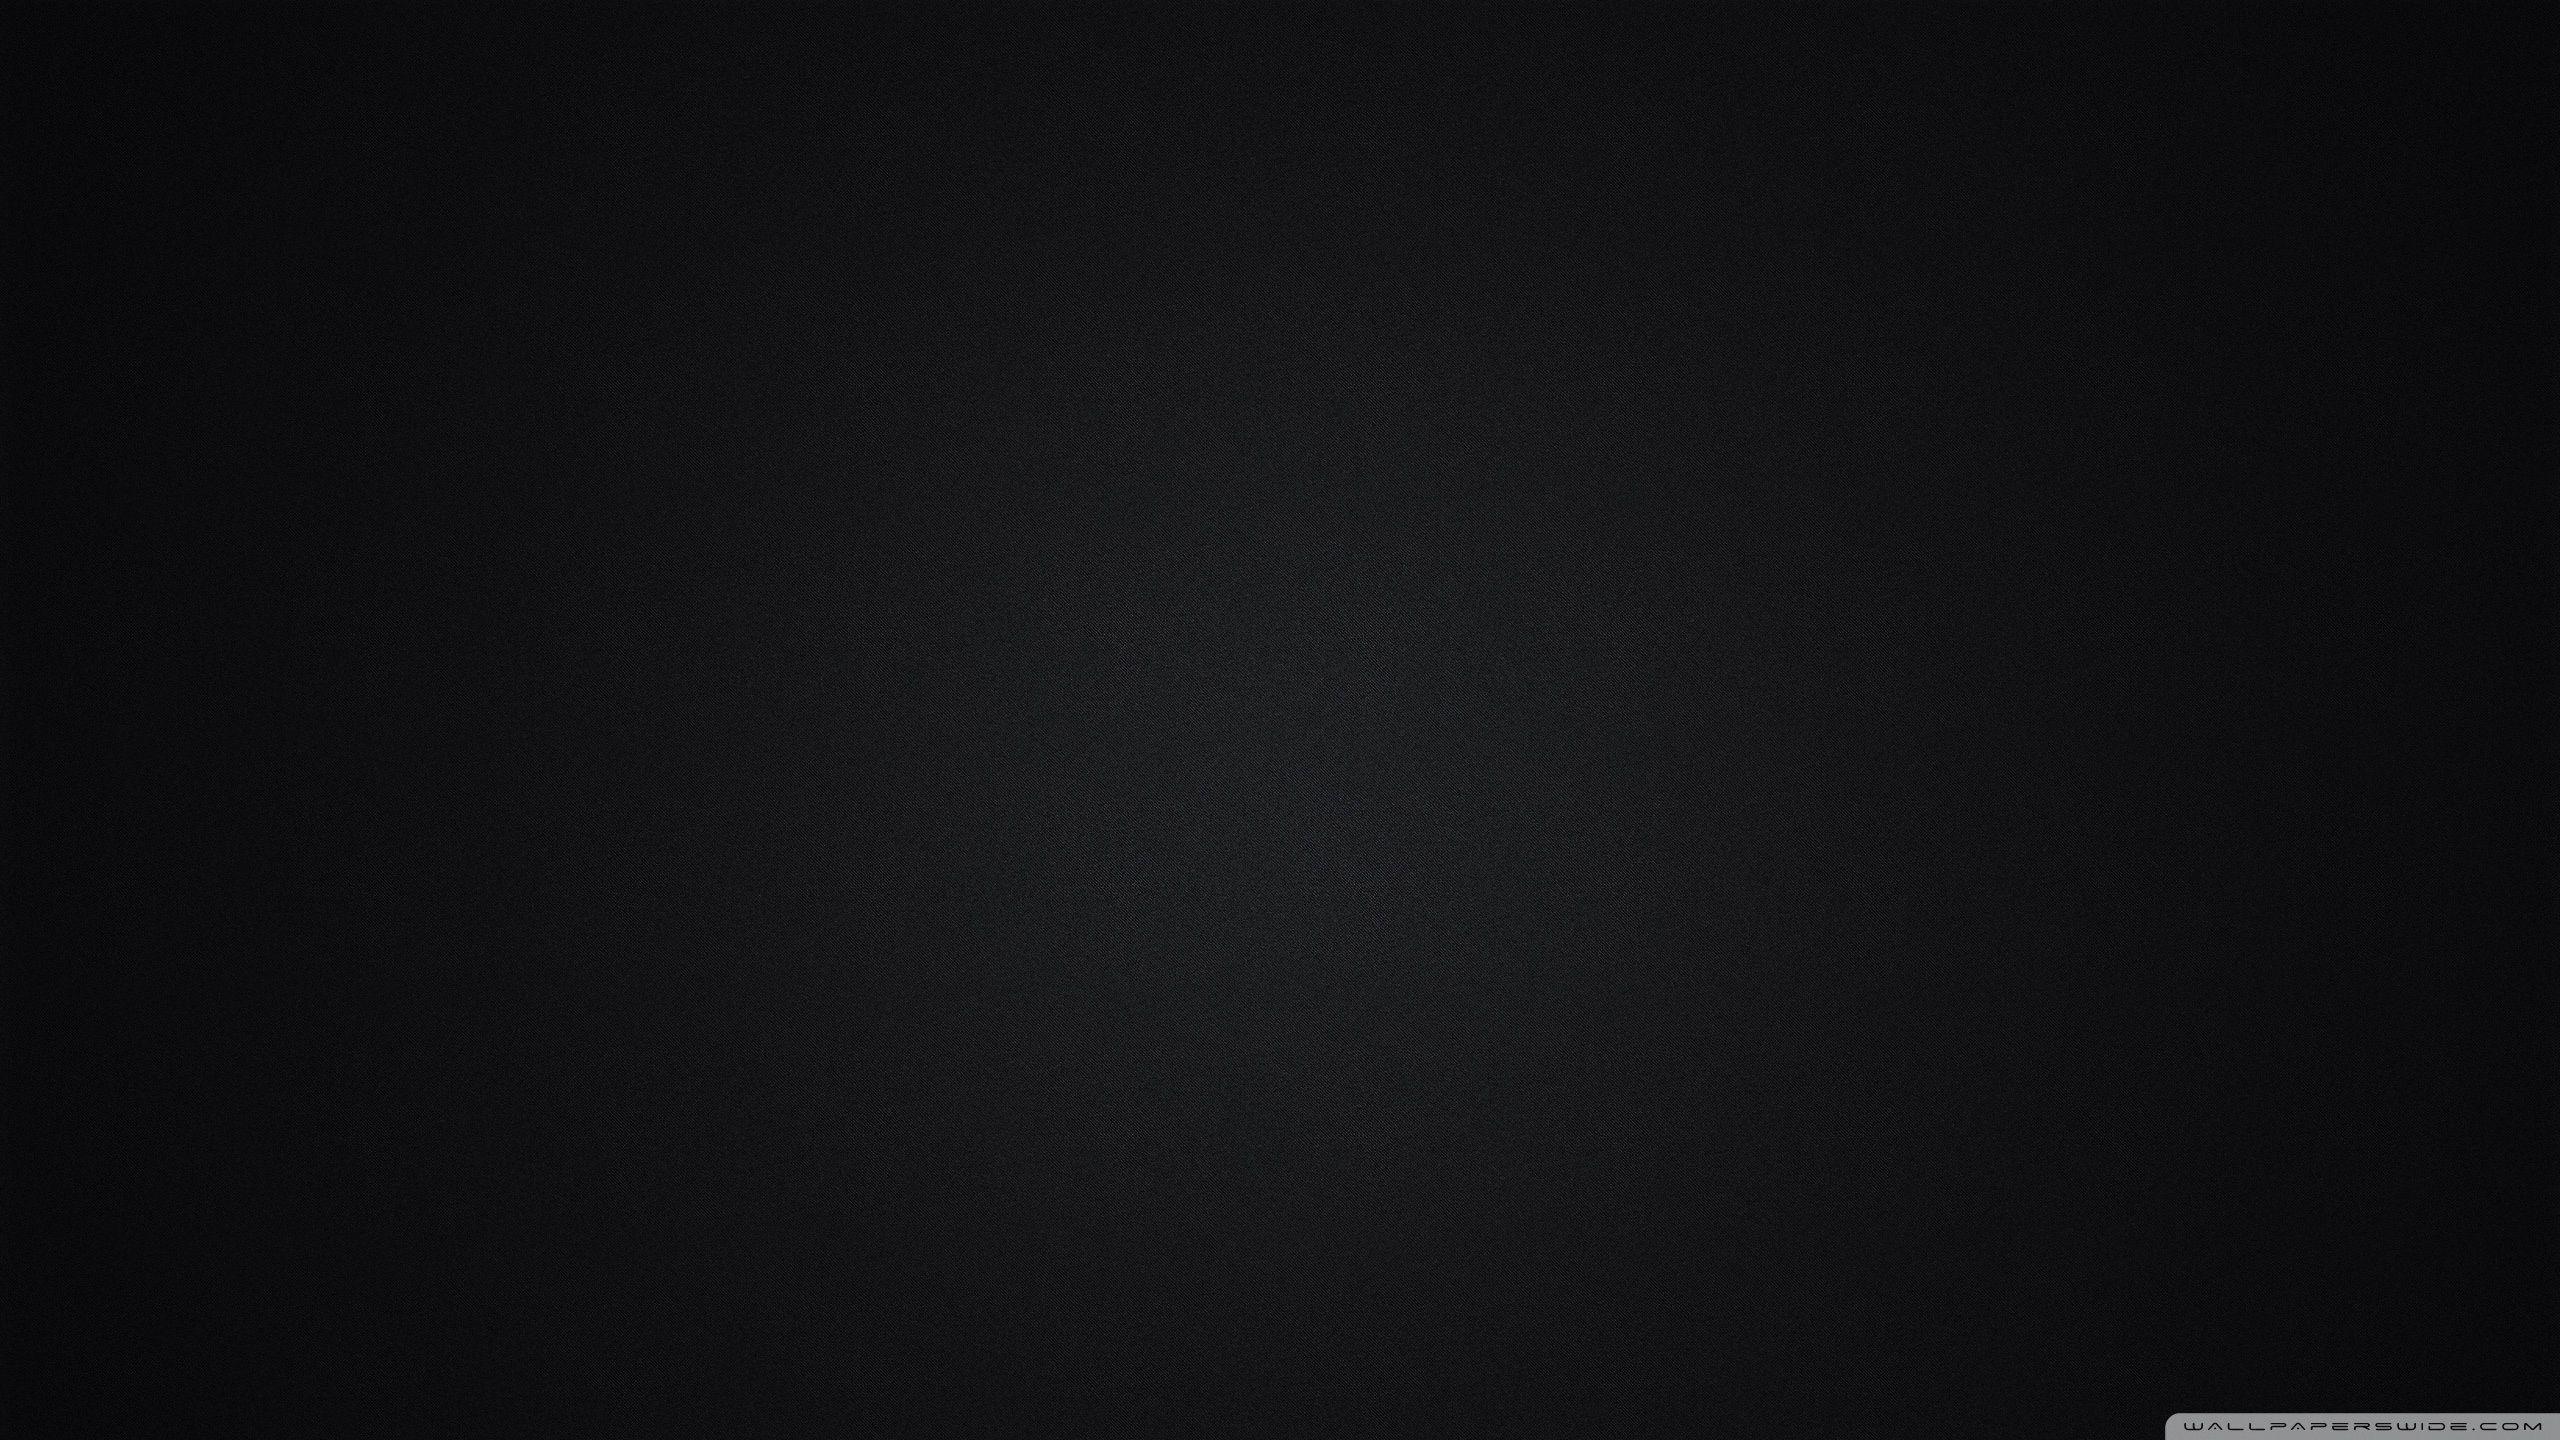 Plain Black Desktop Wallpapers - Top Những Hình Ảnh Đẹp